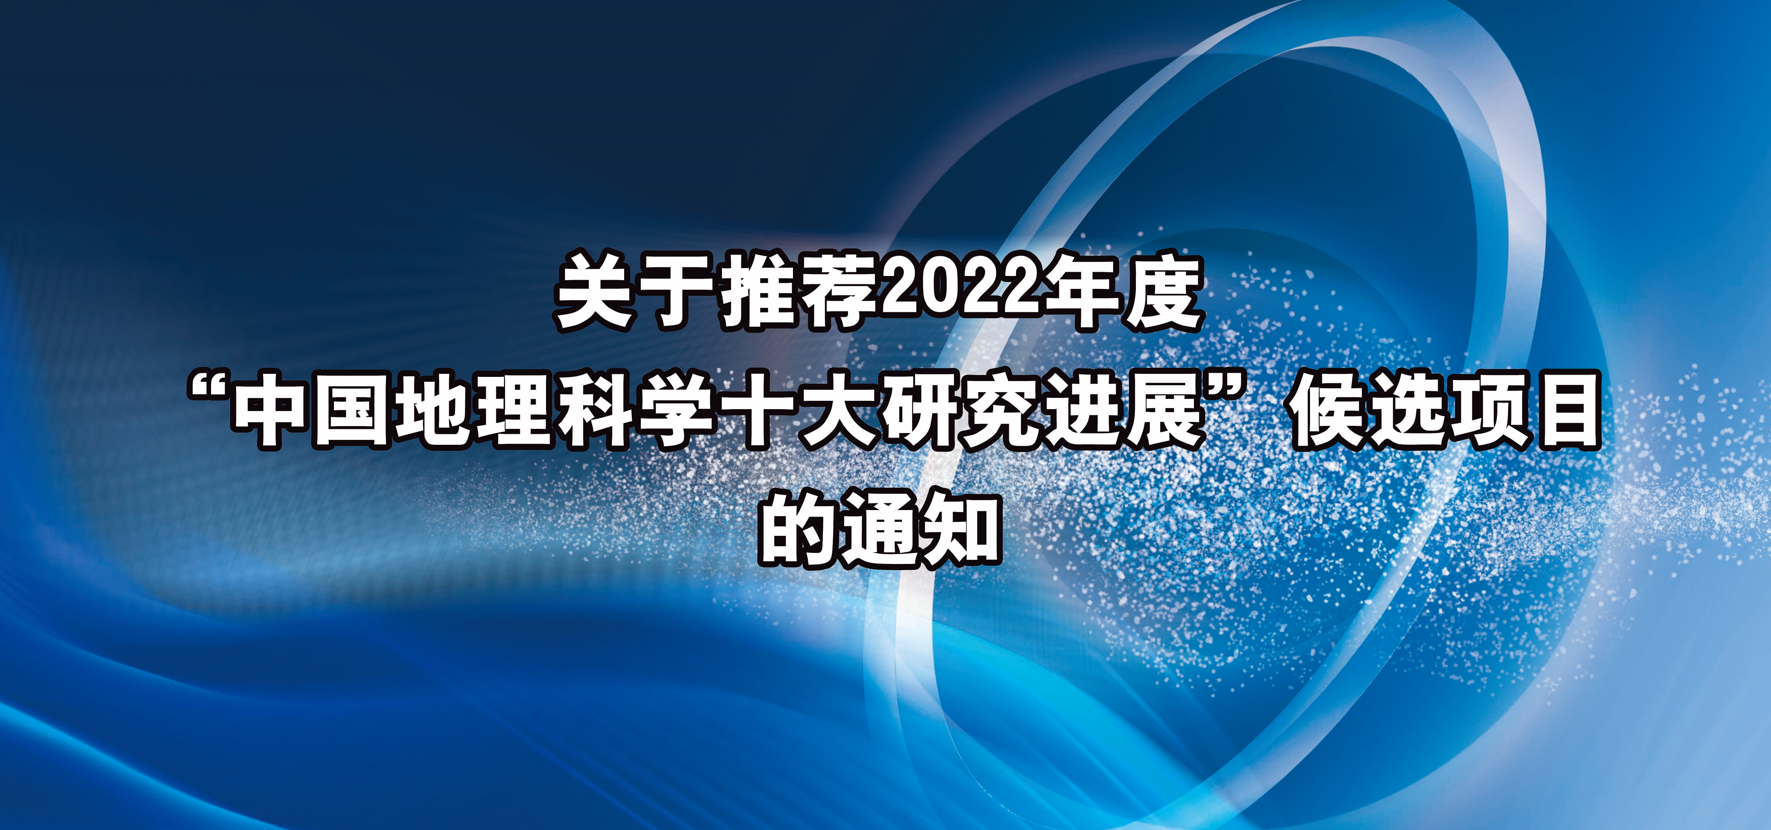 关于推荐2022年度“中国地理科学十大研究进展” 候选项目的通知